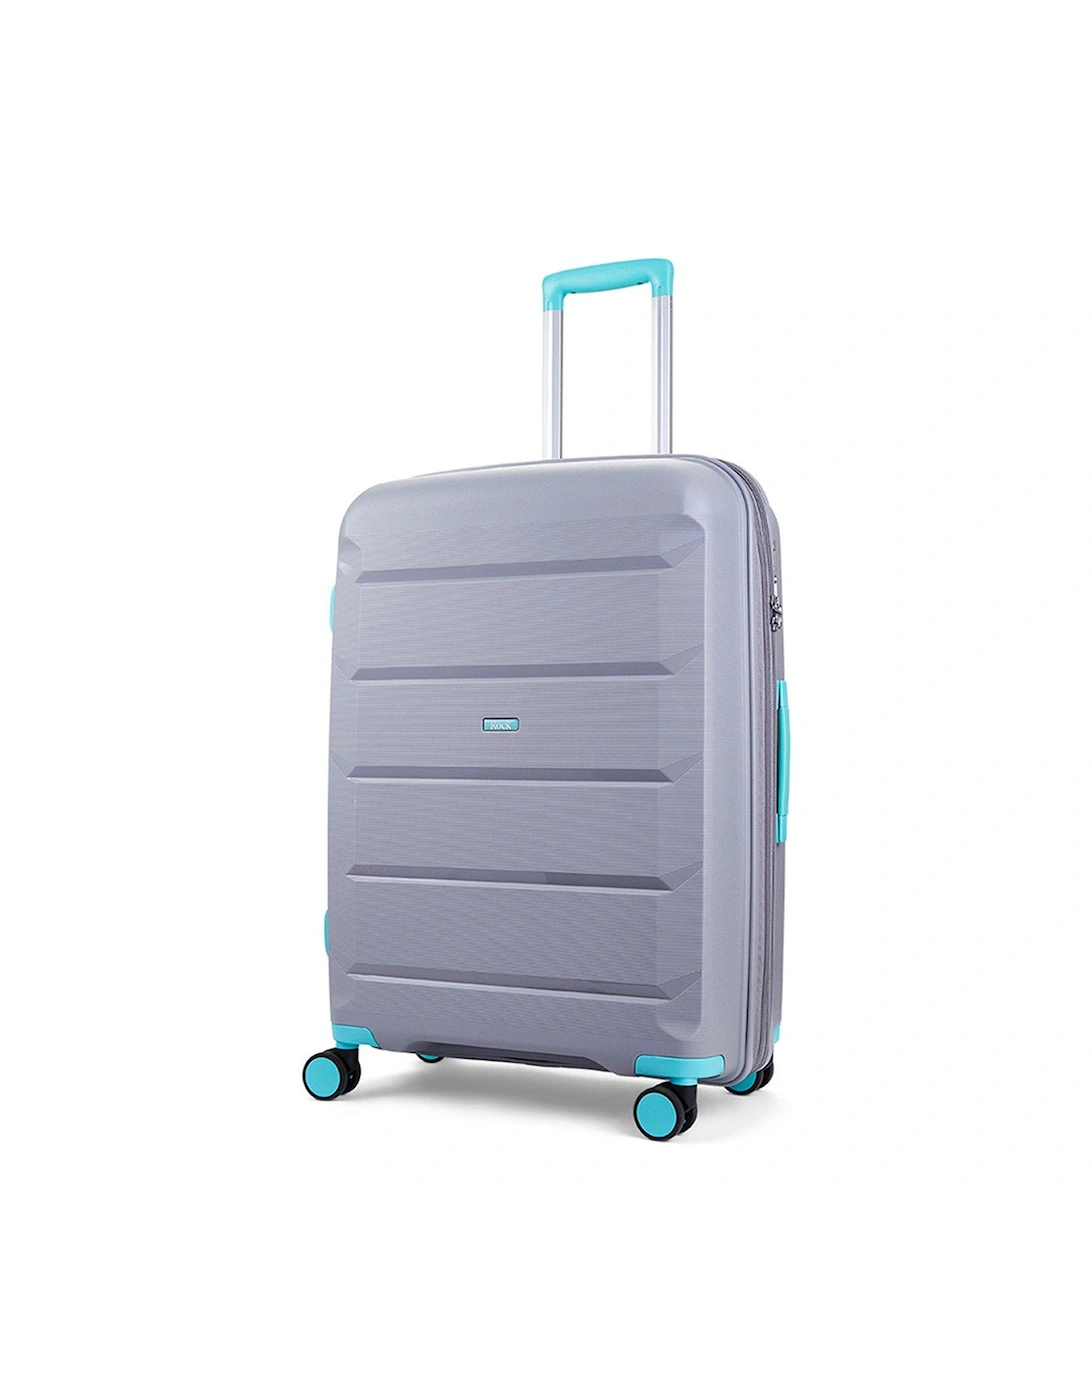 Tulum Hardshell 8-wheel spinner Large Suitcase -Grey/Aqua, 3 of 2